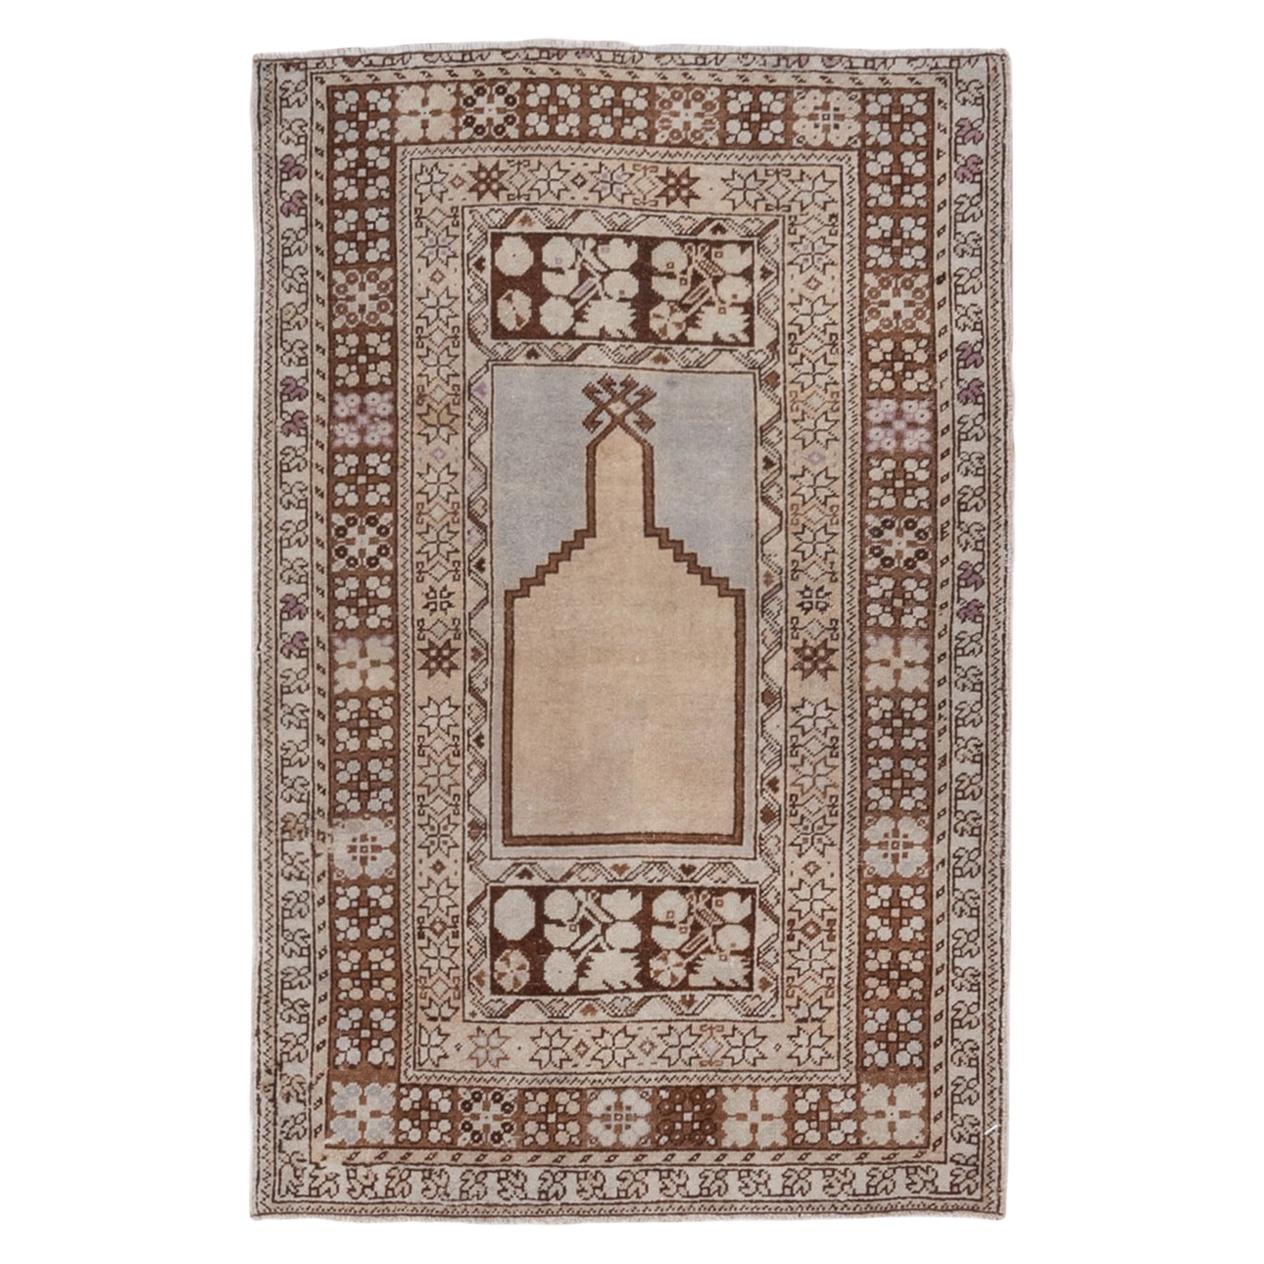 Antique Turkish Prayer Rug, Light Palette